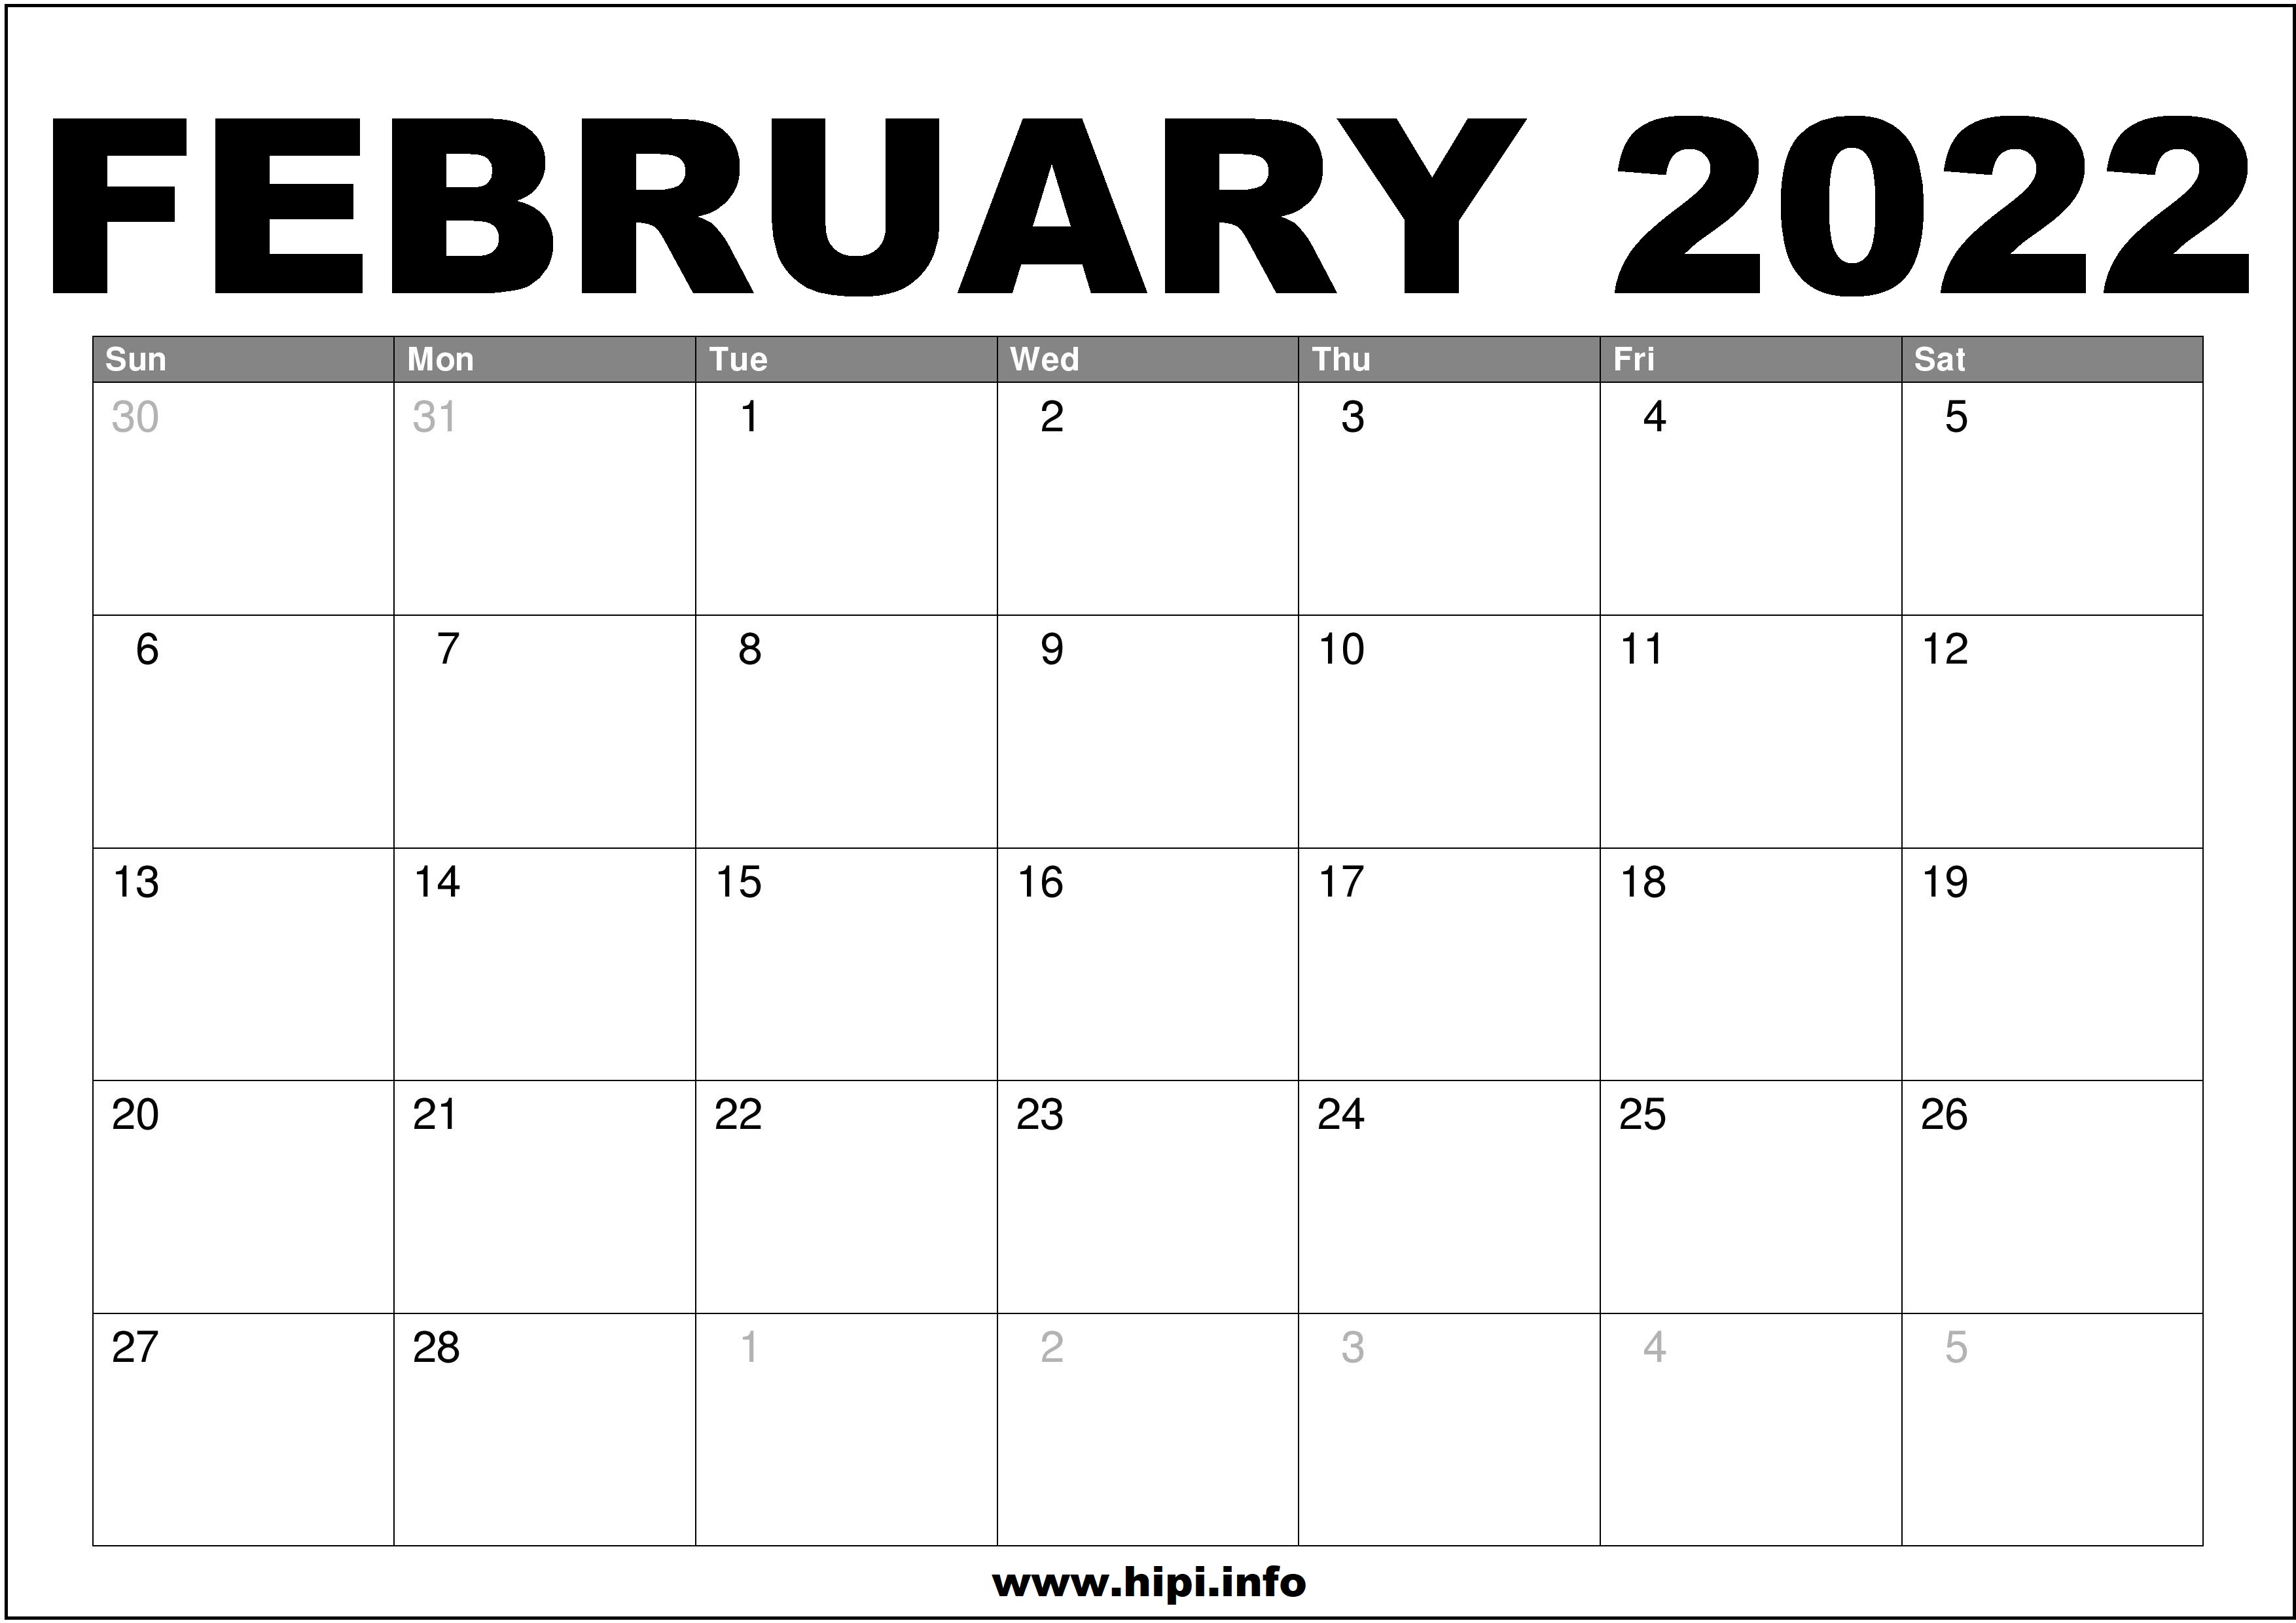 Free 2022 February Calendar February 2022 Calendar Printable Free - Hipi.info | Calendars Printable Free